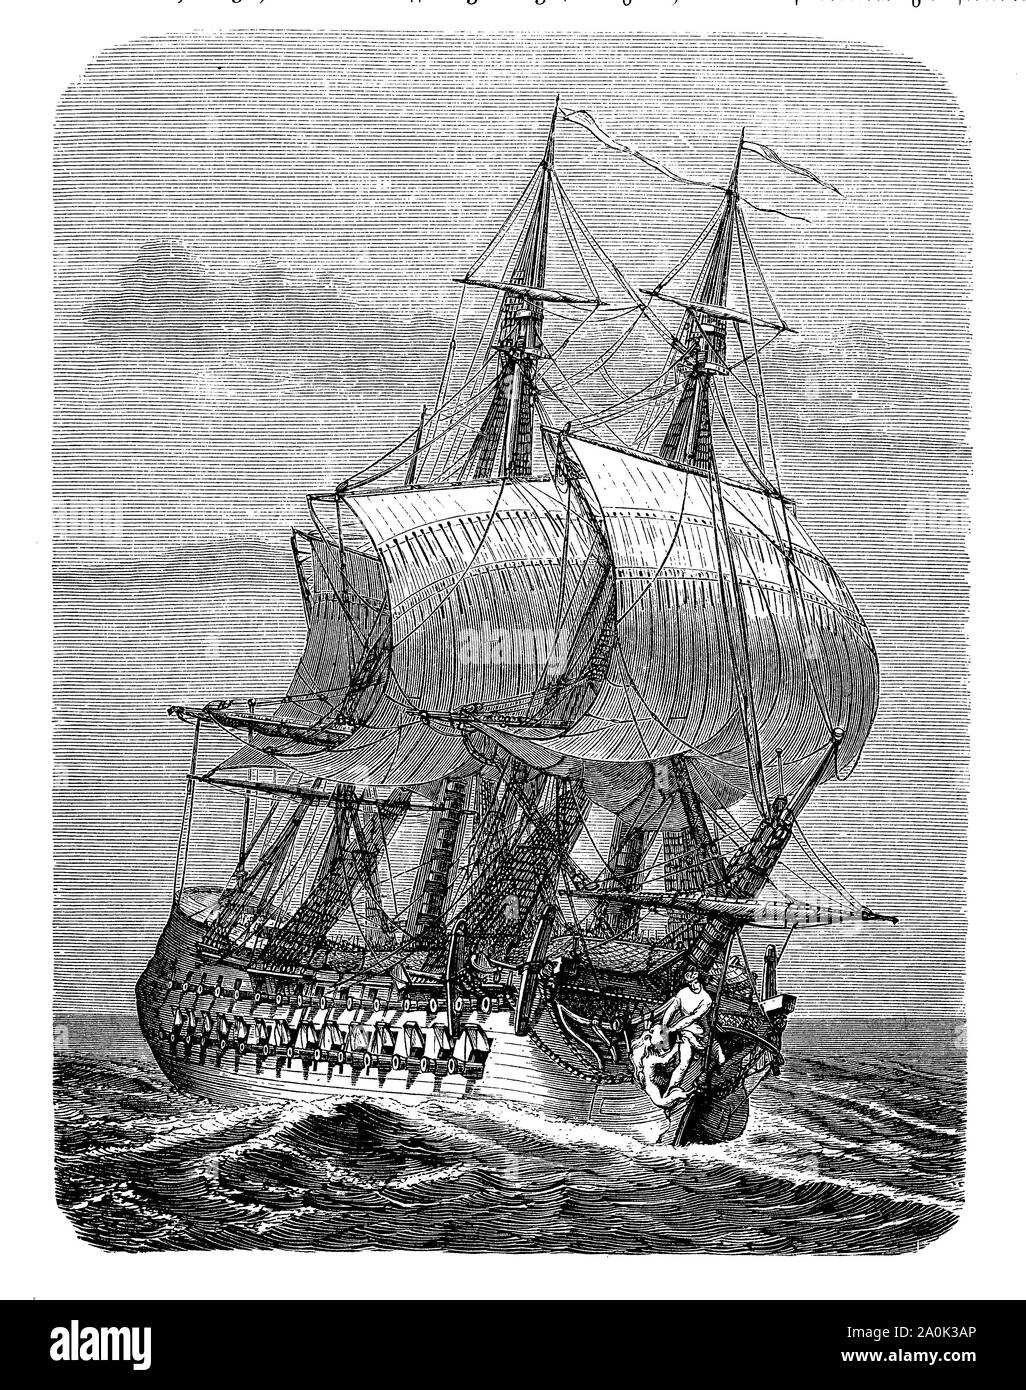 Louis XIV reconstruit la marine française, l'Hercule de guerre avec 42 canons a été construit dans le chantier naval de Brest en 1655 Banque D'Images